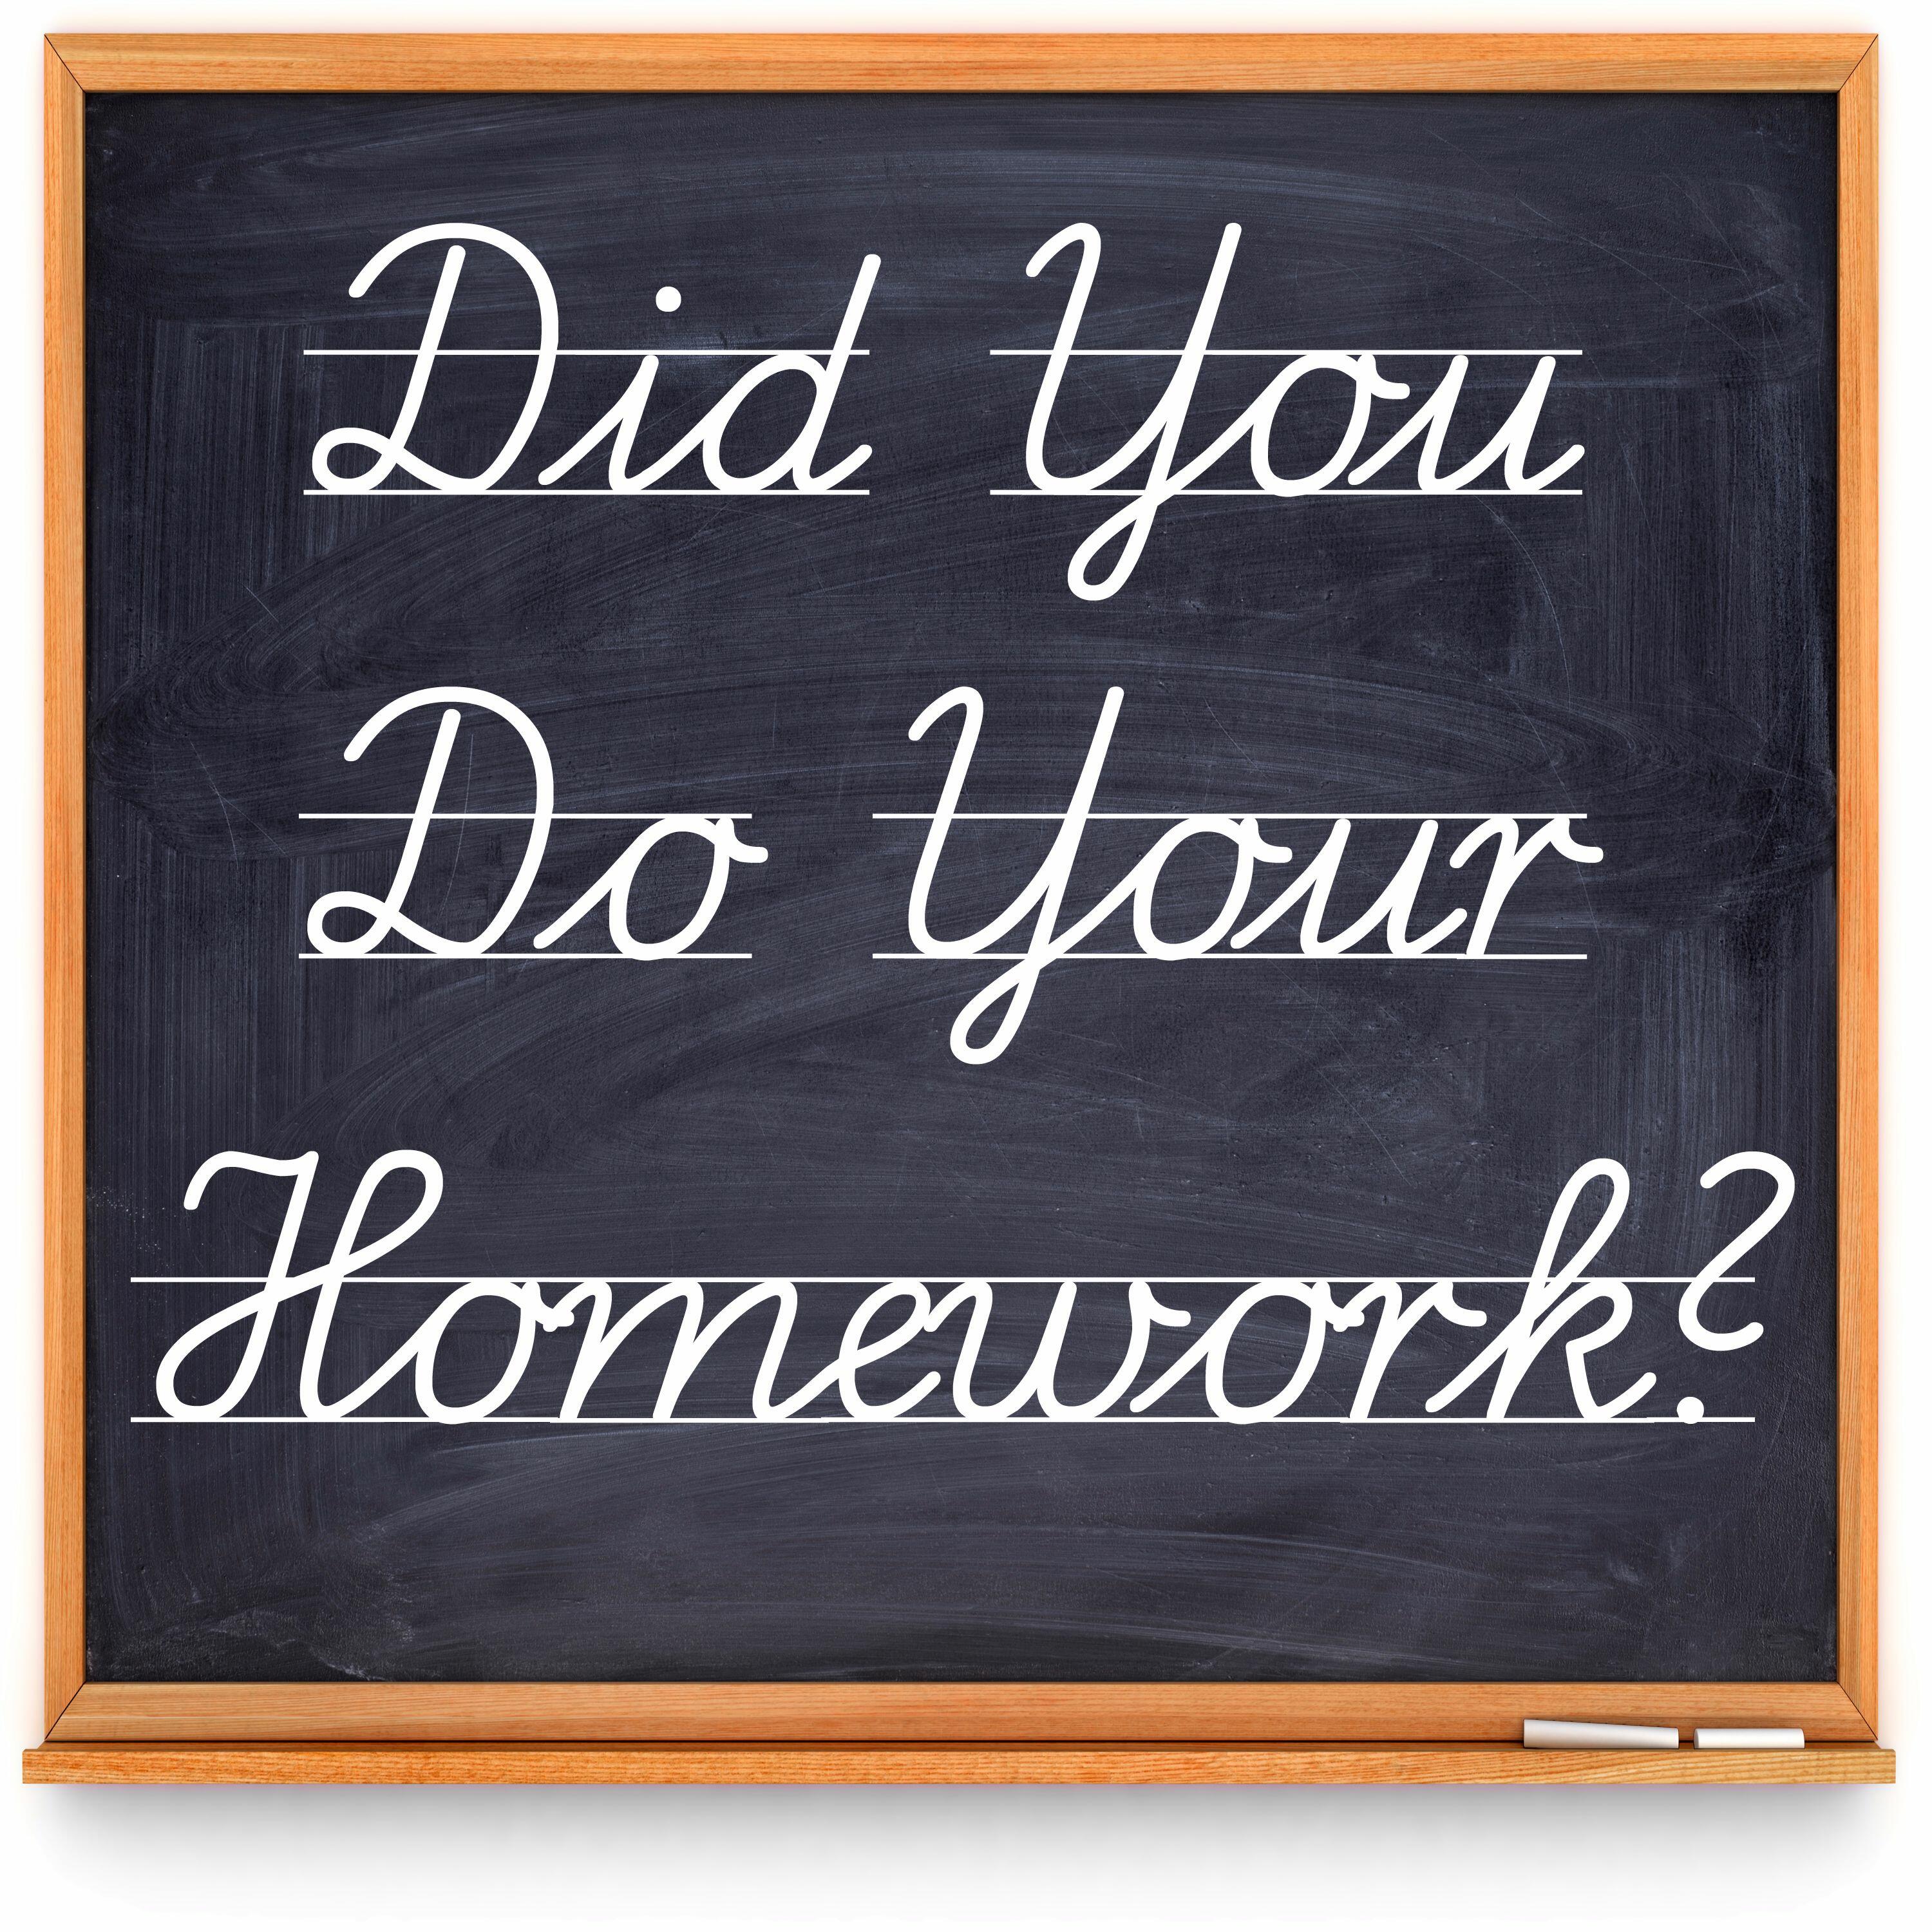 Do you get homework